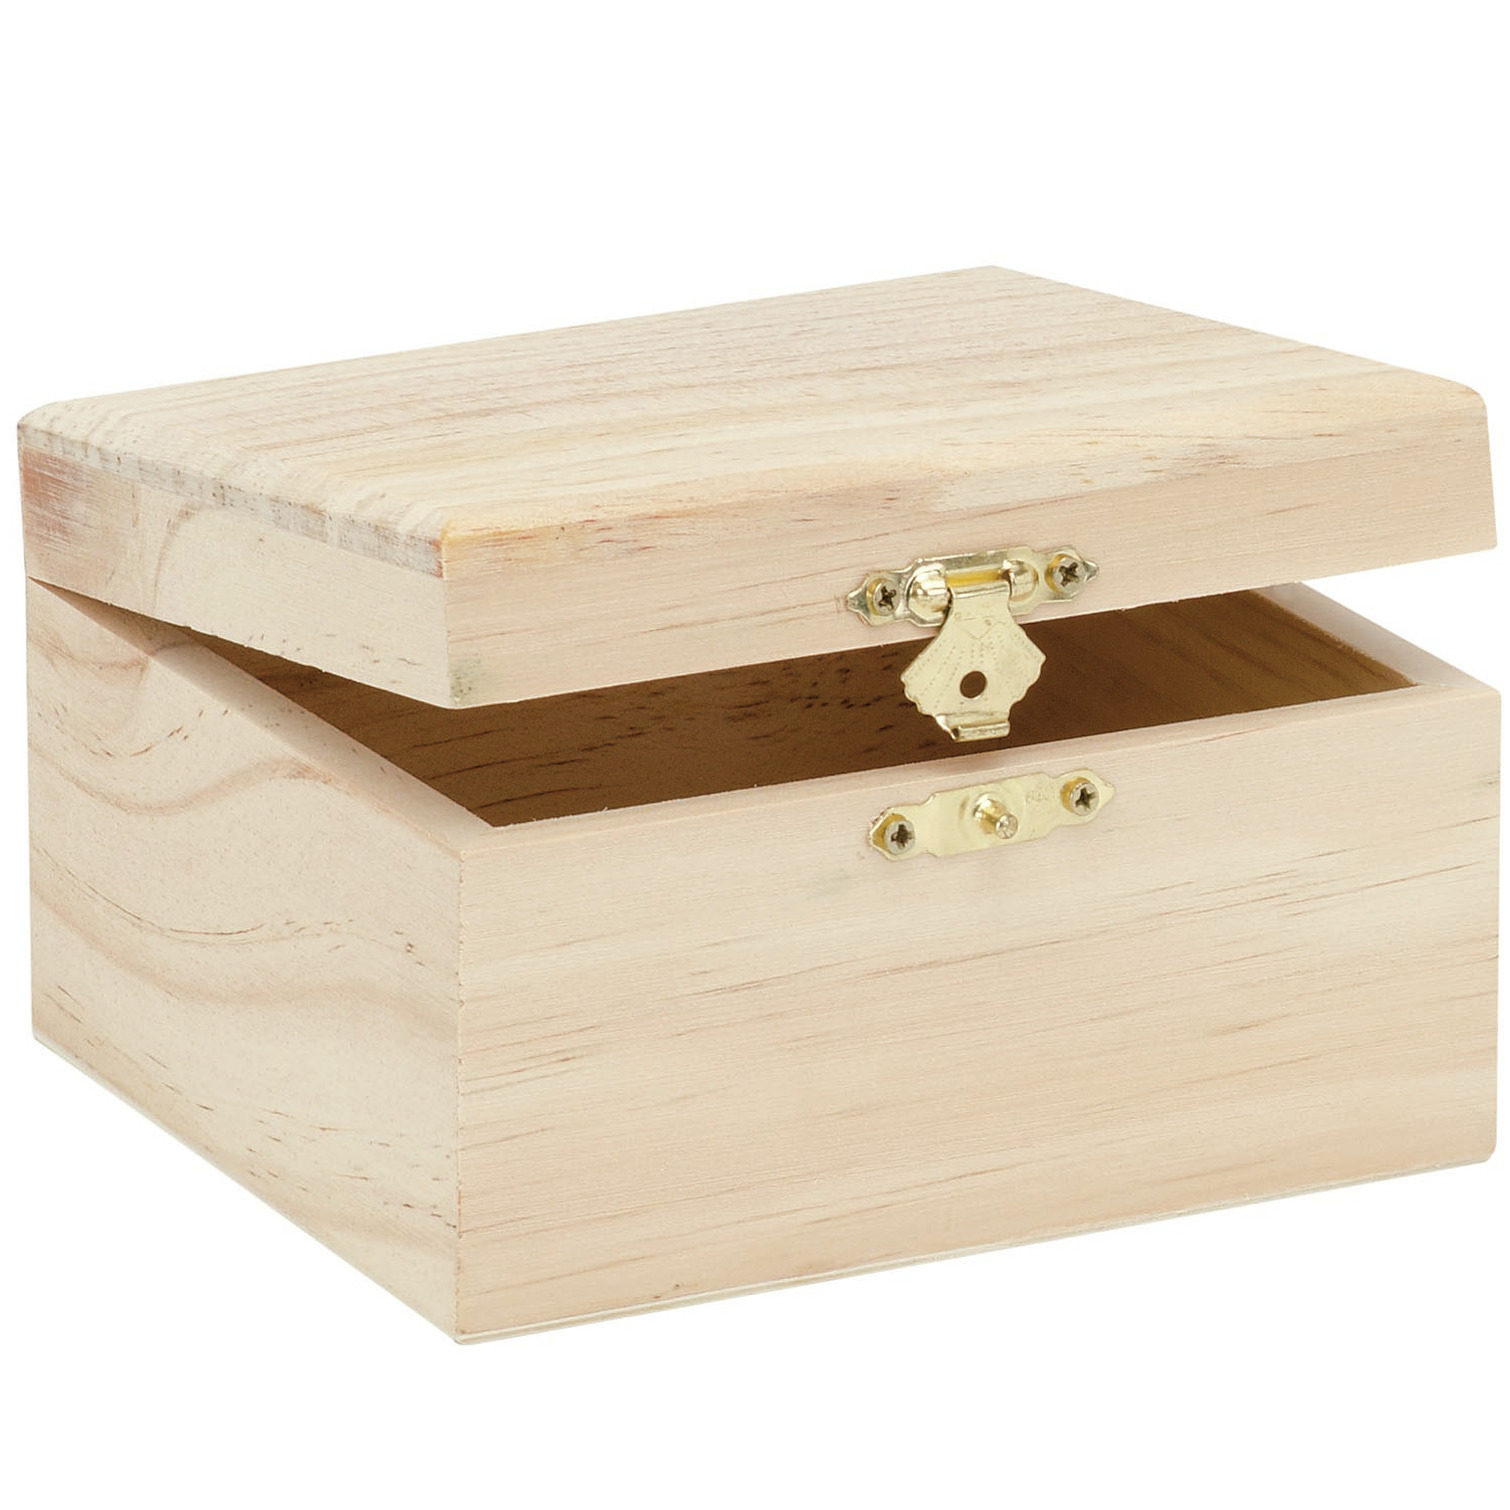 Klein houten kistje rechthoek 12.5 x 11.5 x 7.5 cm